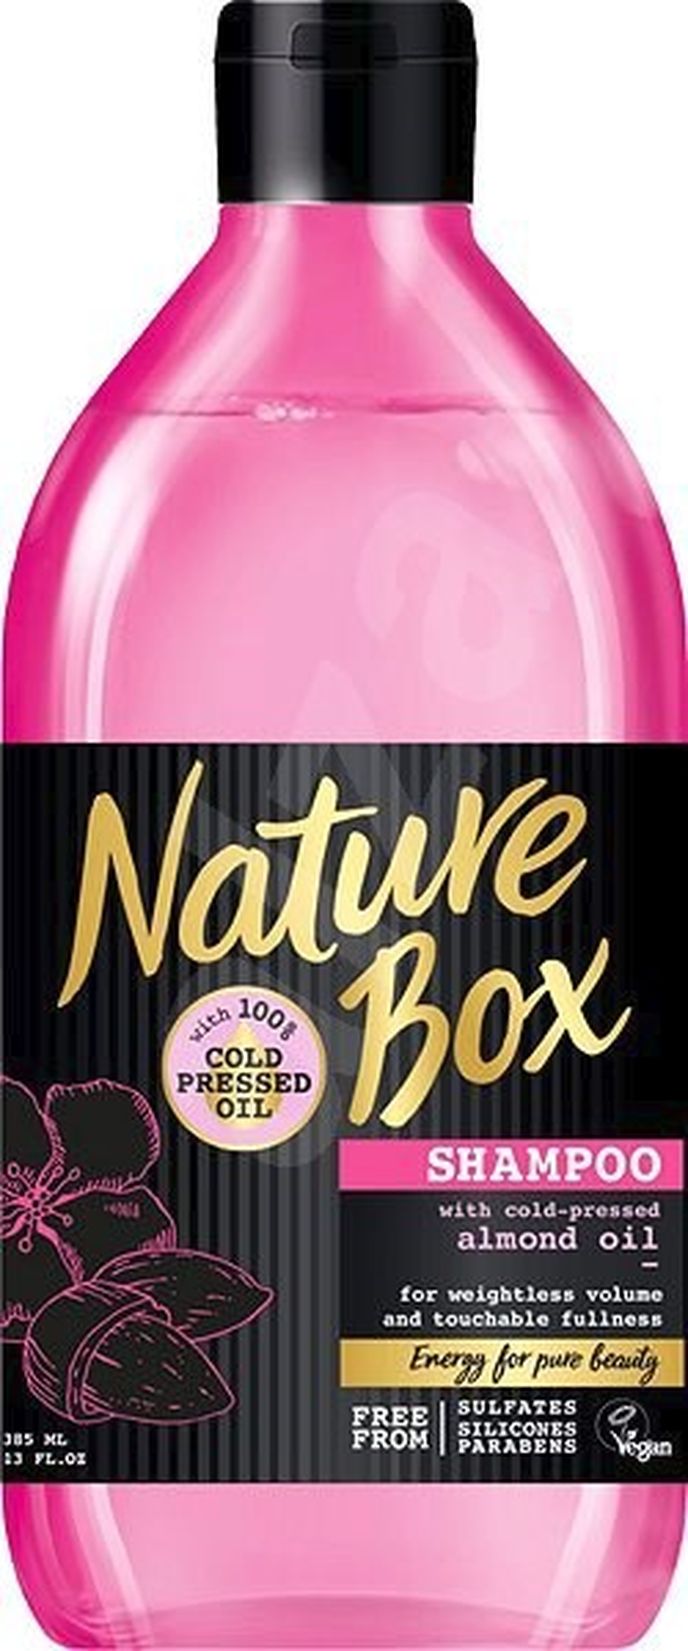 Přírodní šampon pro lesk vlasů Almond Oil, Nature Box, alza.cz, 139 Kč/385 ml